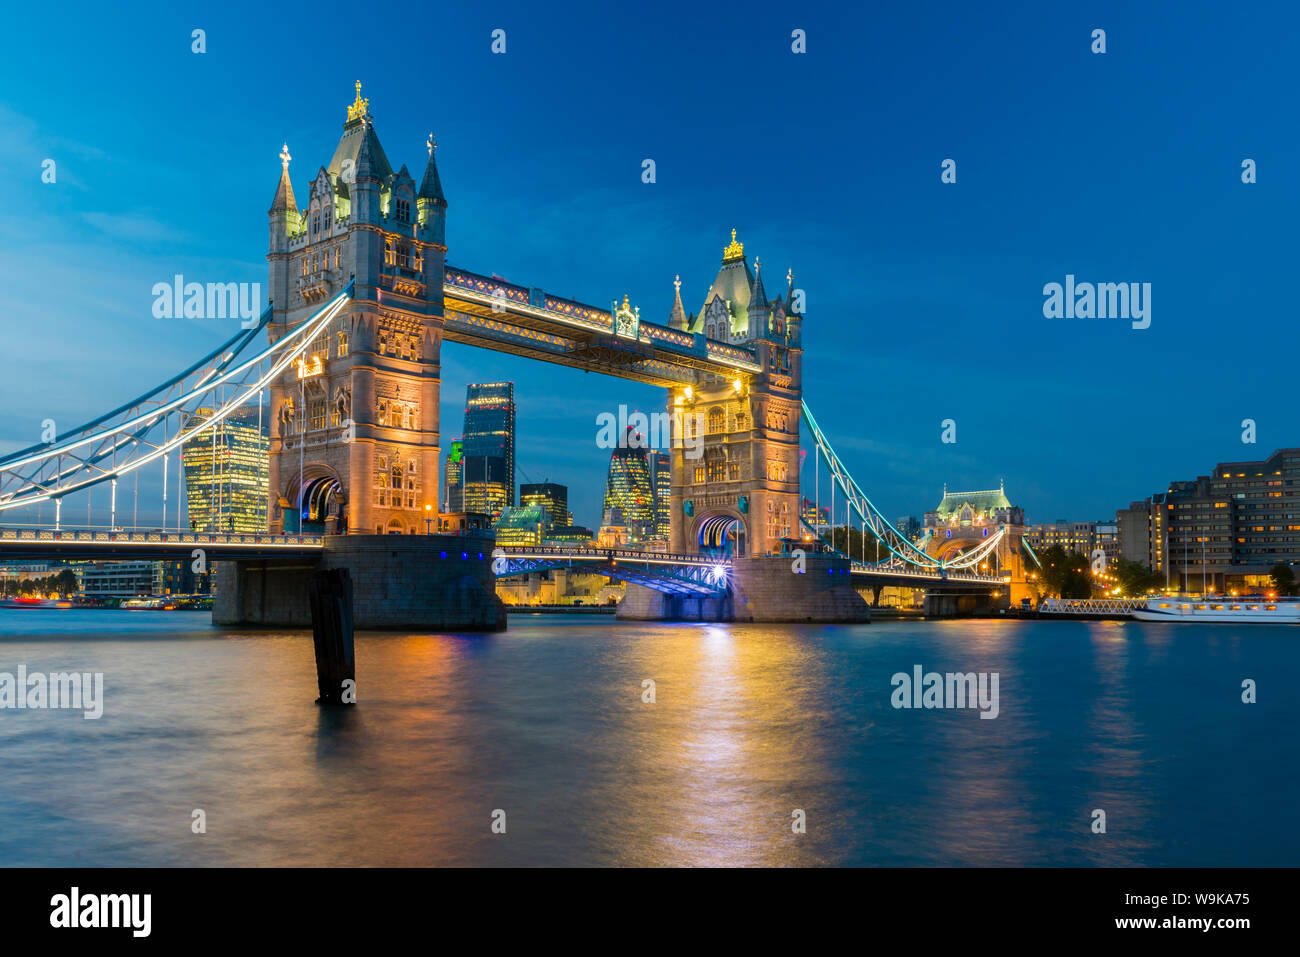 Die Tower Bridge über die Themse, London Skyline einschließlich Cheesegrater und Spreewaldbitter Wolkenkratzer, London, England, Vereinigtes Königreich, Europa Stockfoto